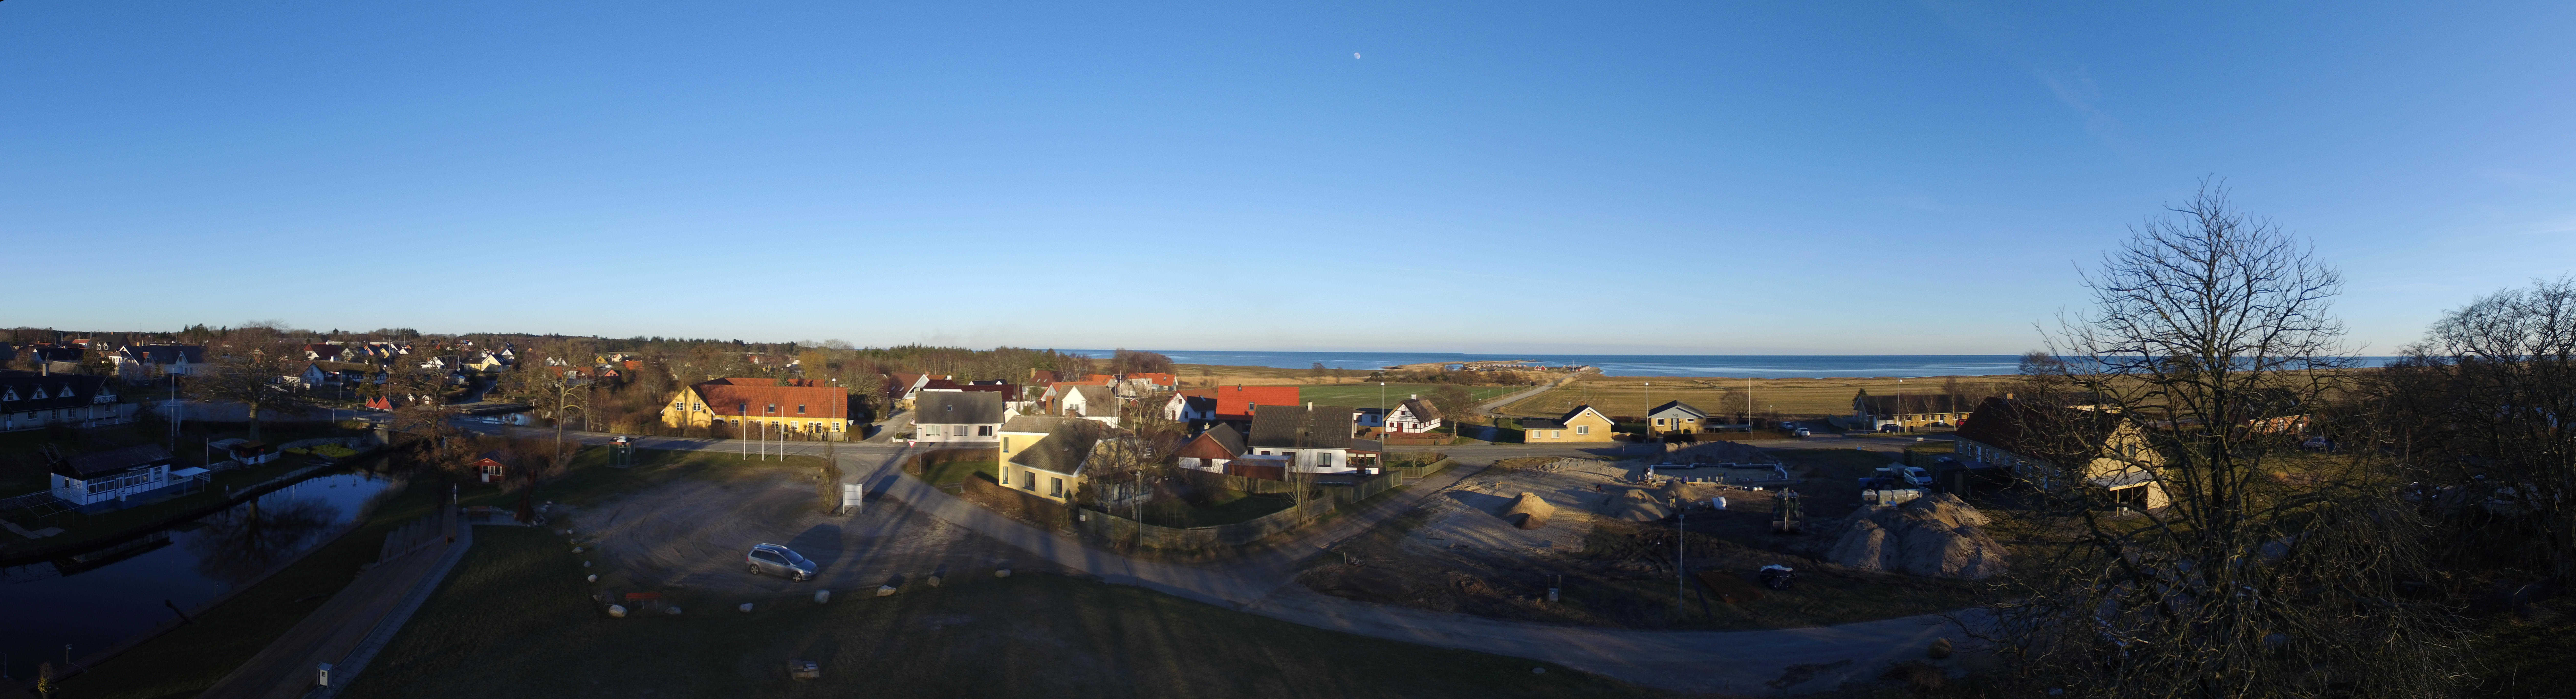 Panoramabillede med udsigt fra krogrunden mod øst.